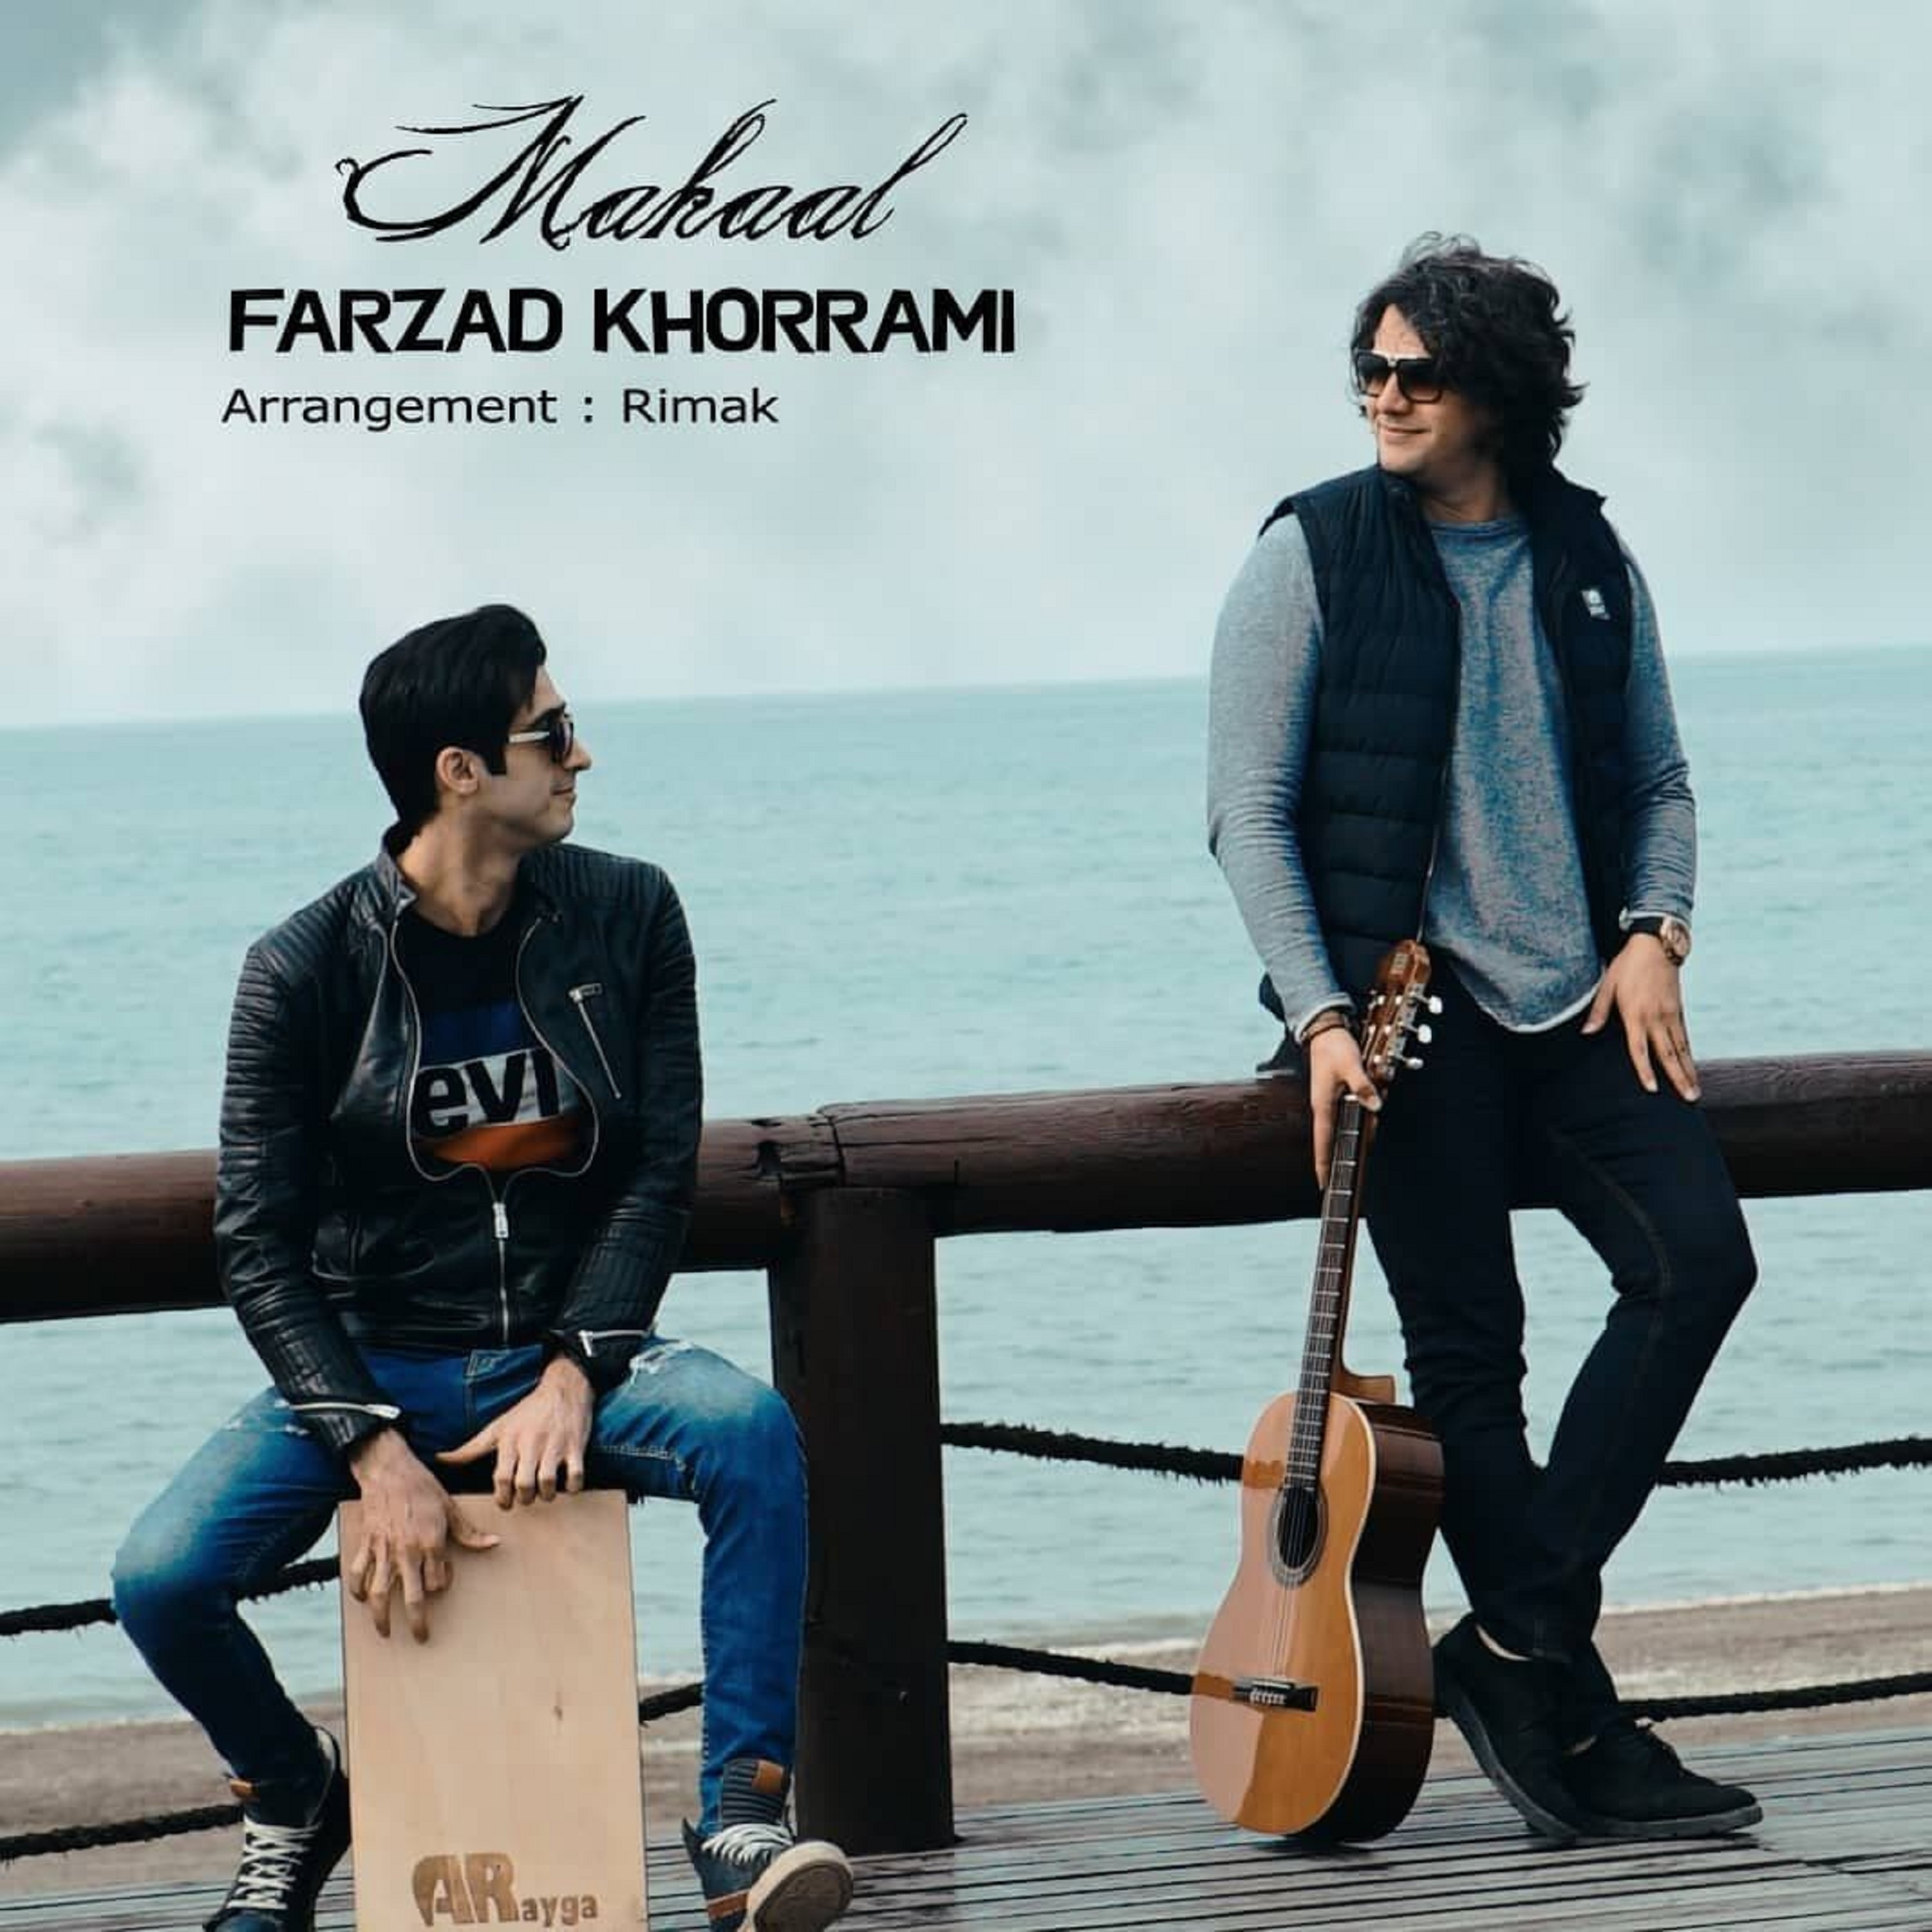  دانلود آهنگ جدید فرزاد خرمی - محال | Download New Music By Farzad Khorrami - Mahaal